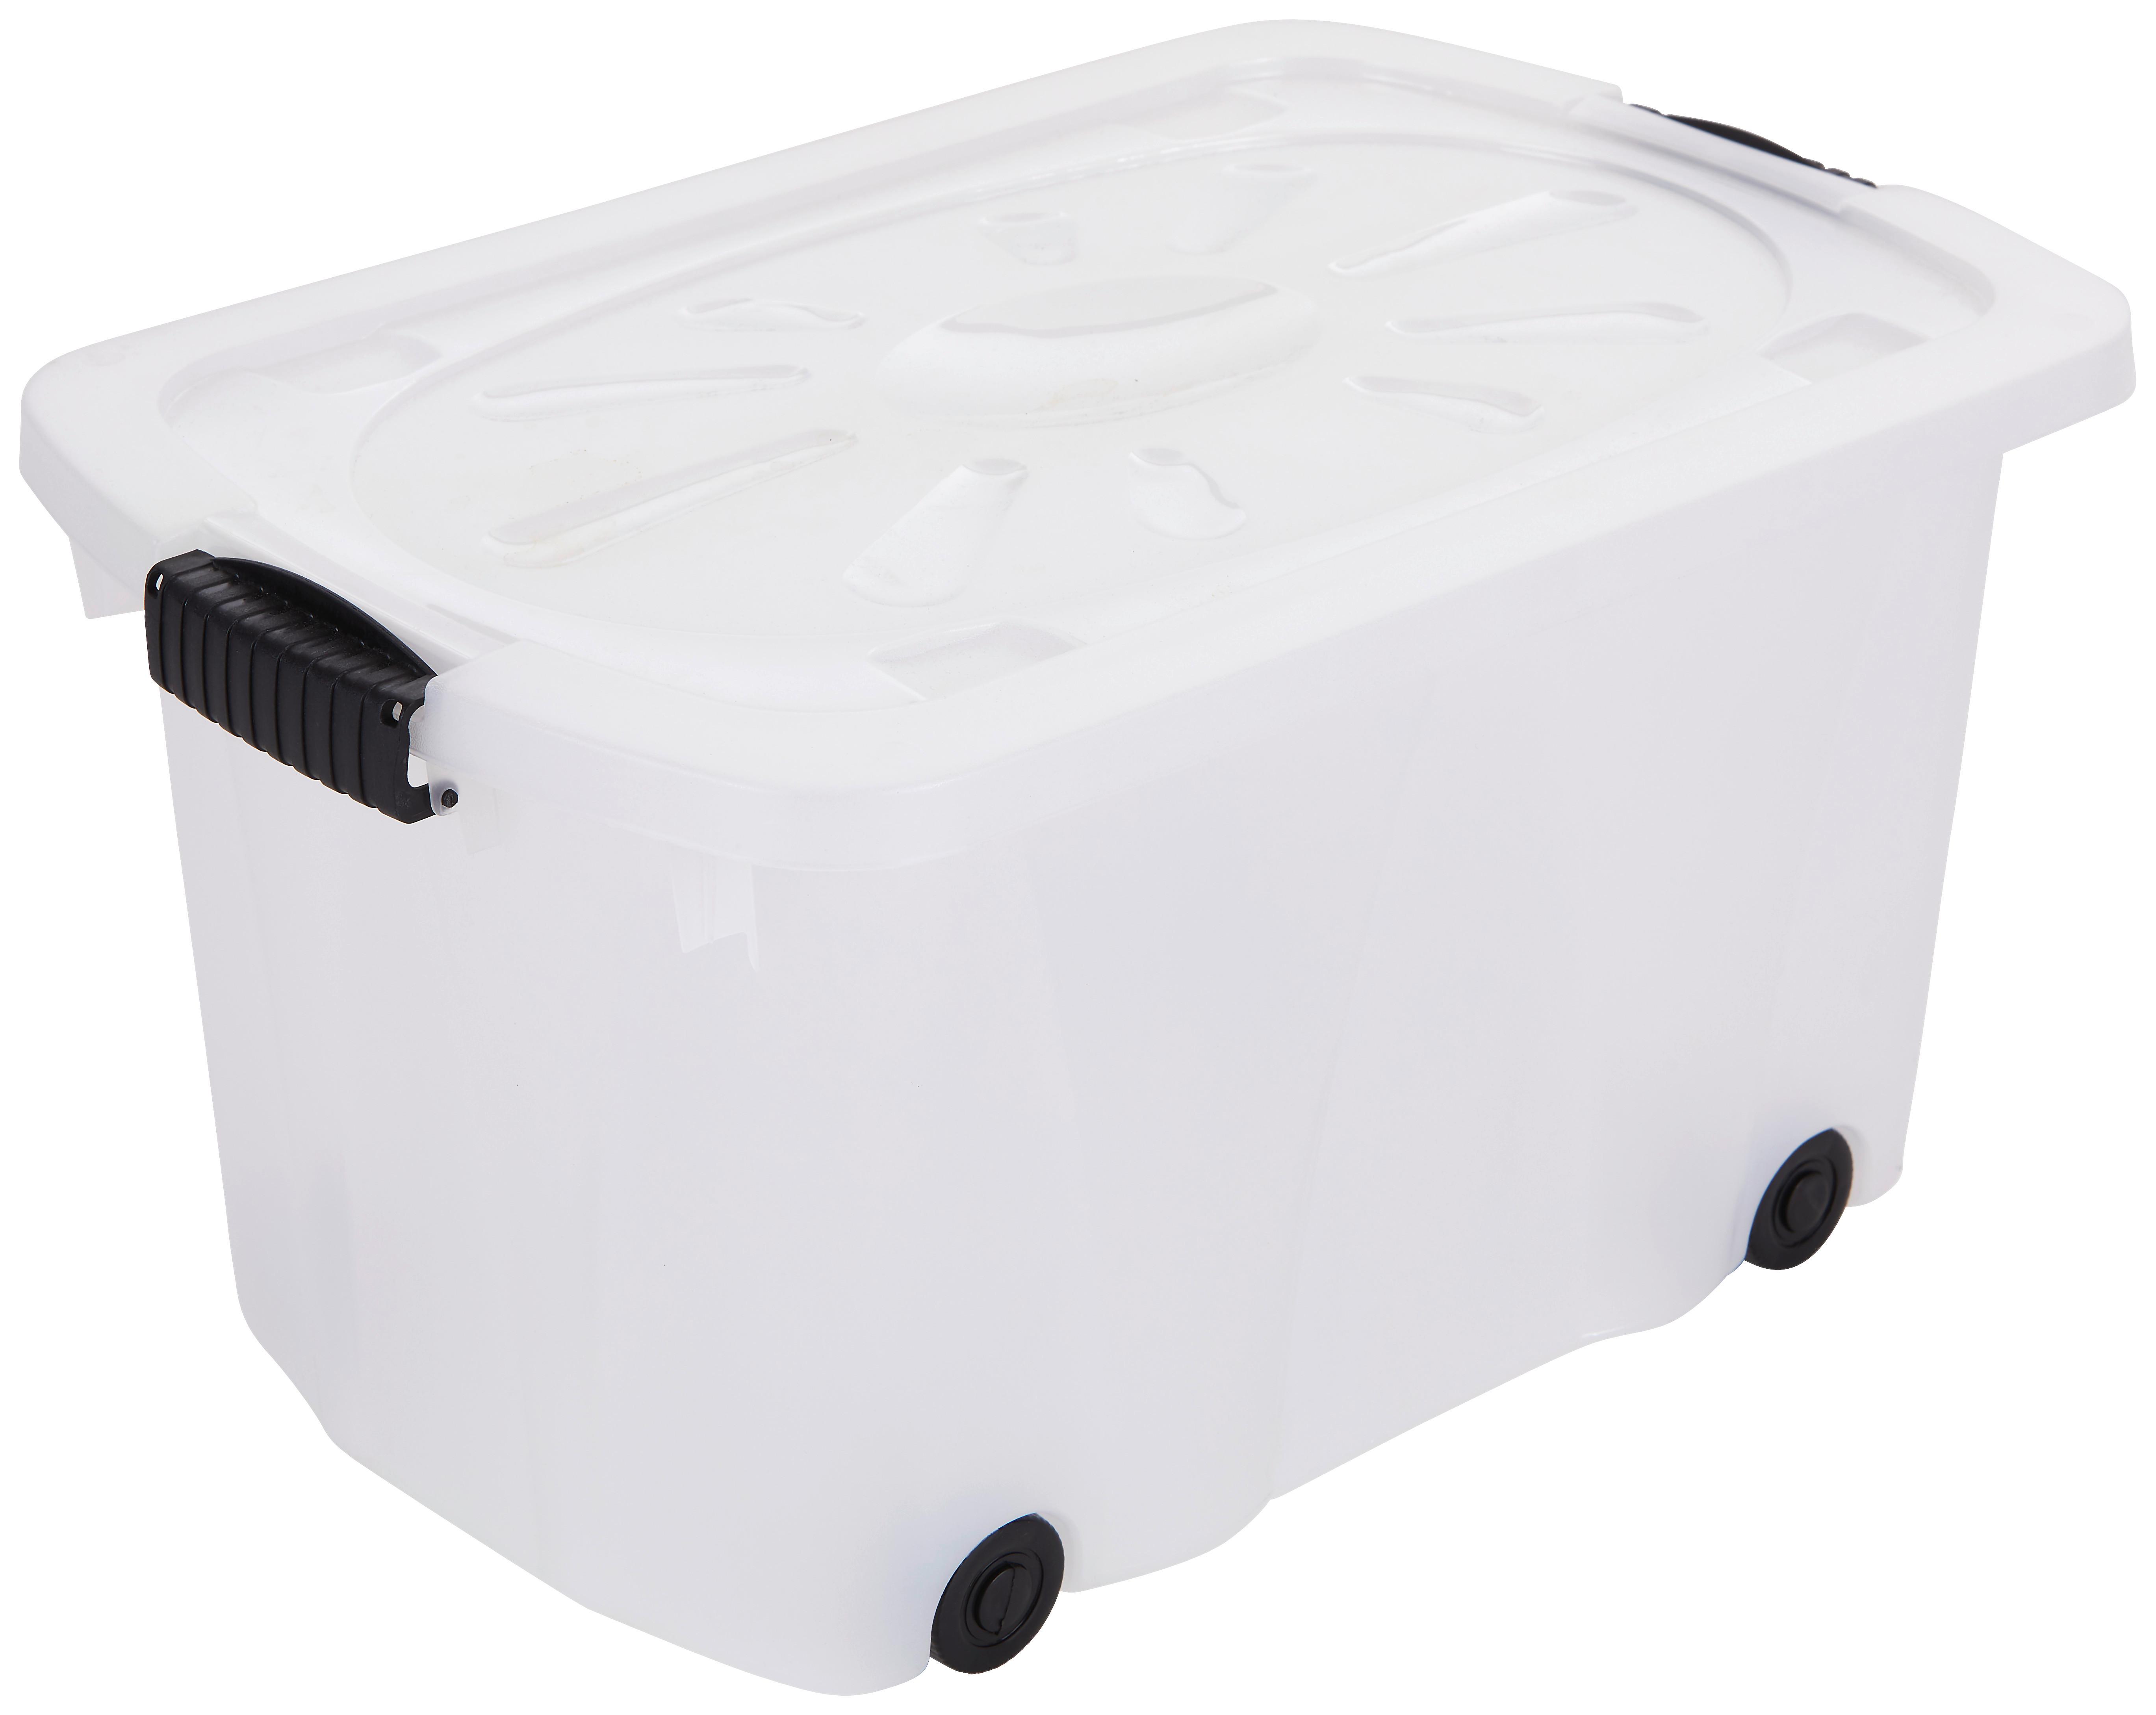 Aufbewahrungsbox Klipper + Deckel Kunststoff 58x37x31cm - Transparent, Basics, Kunststoff (58/37/31cm) - Homezone